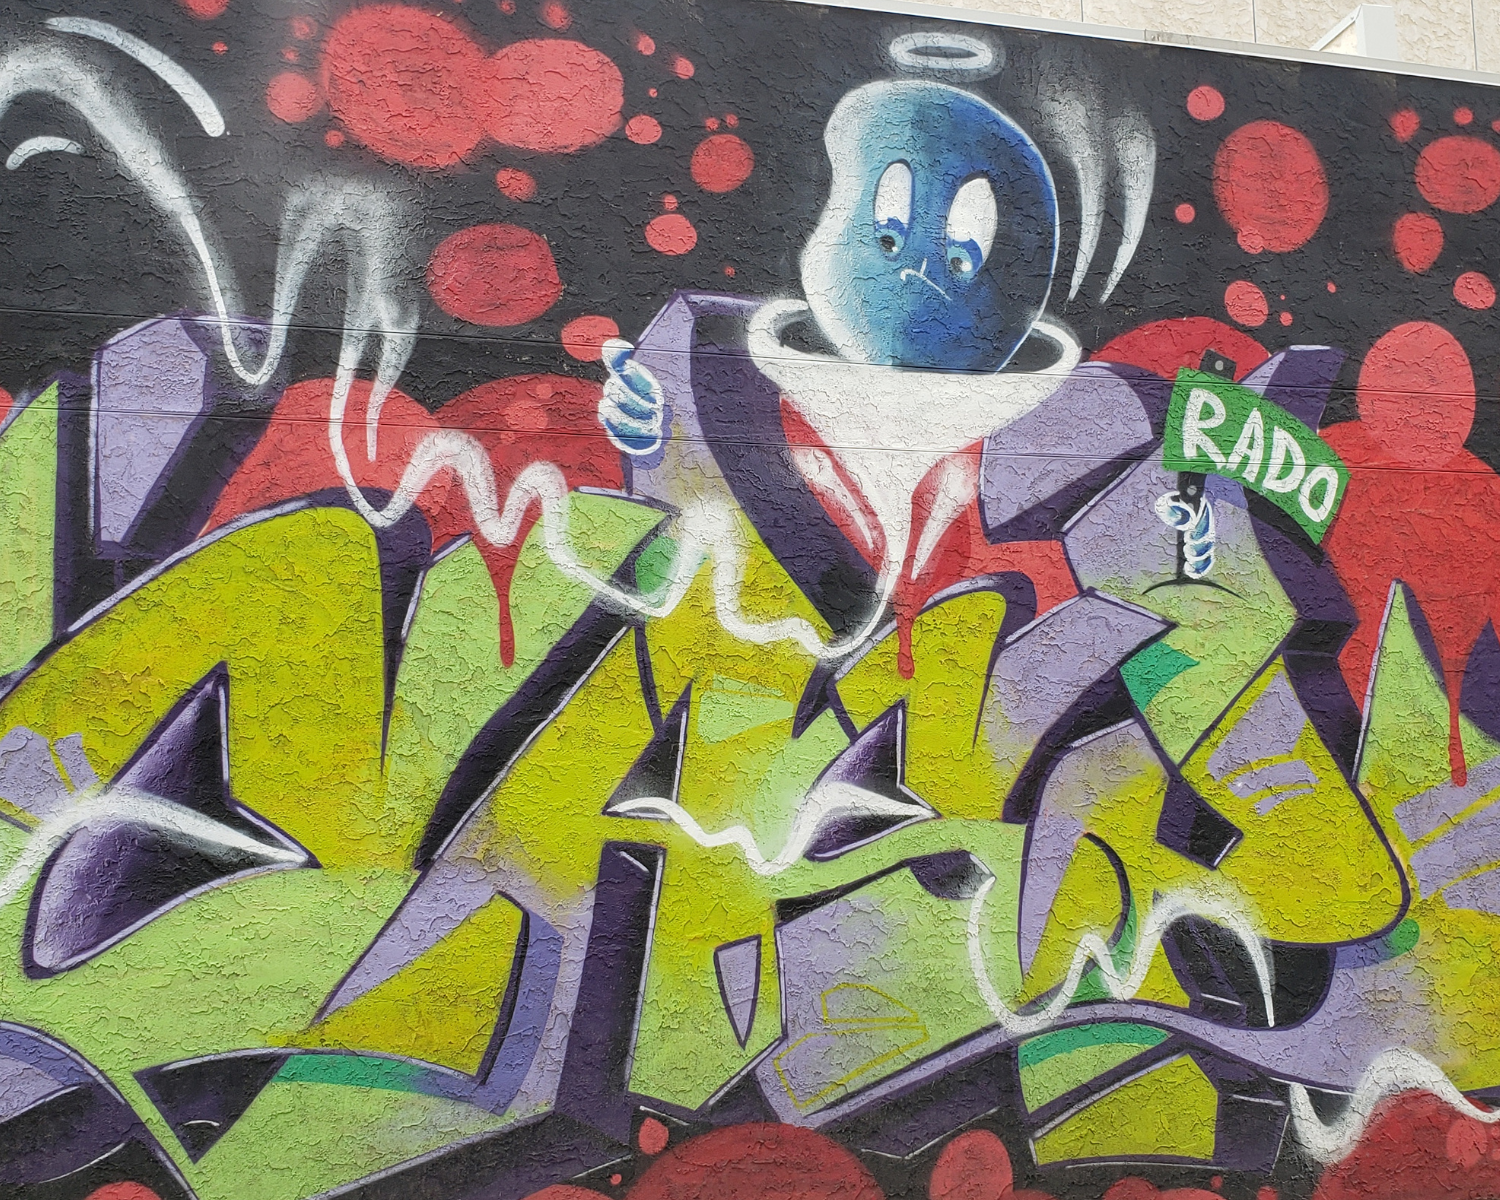 Casper the friendly ghost hovers over graffiti